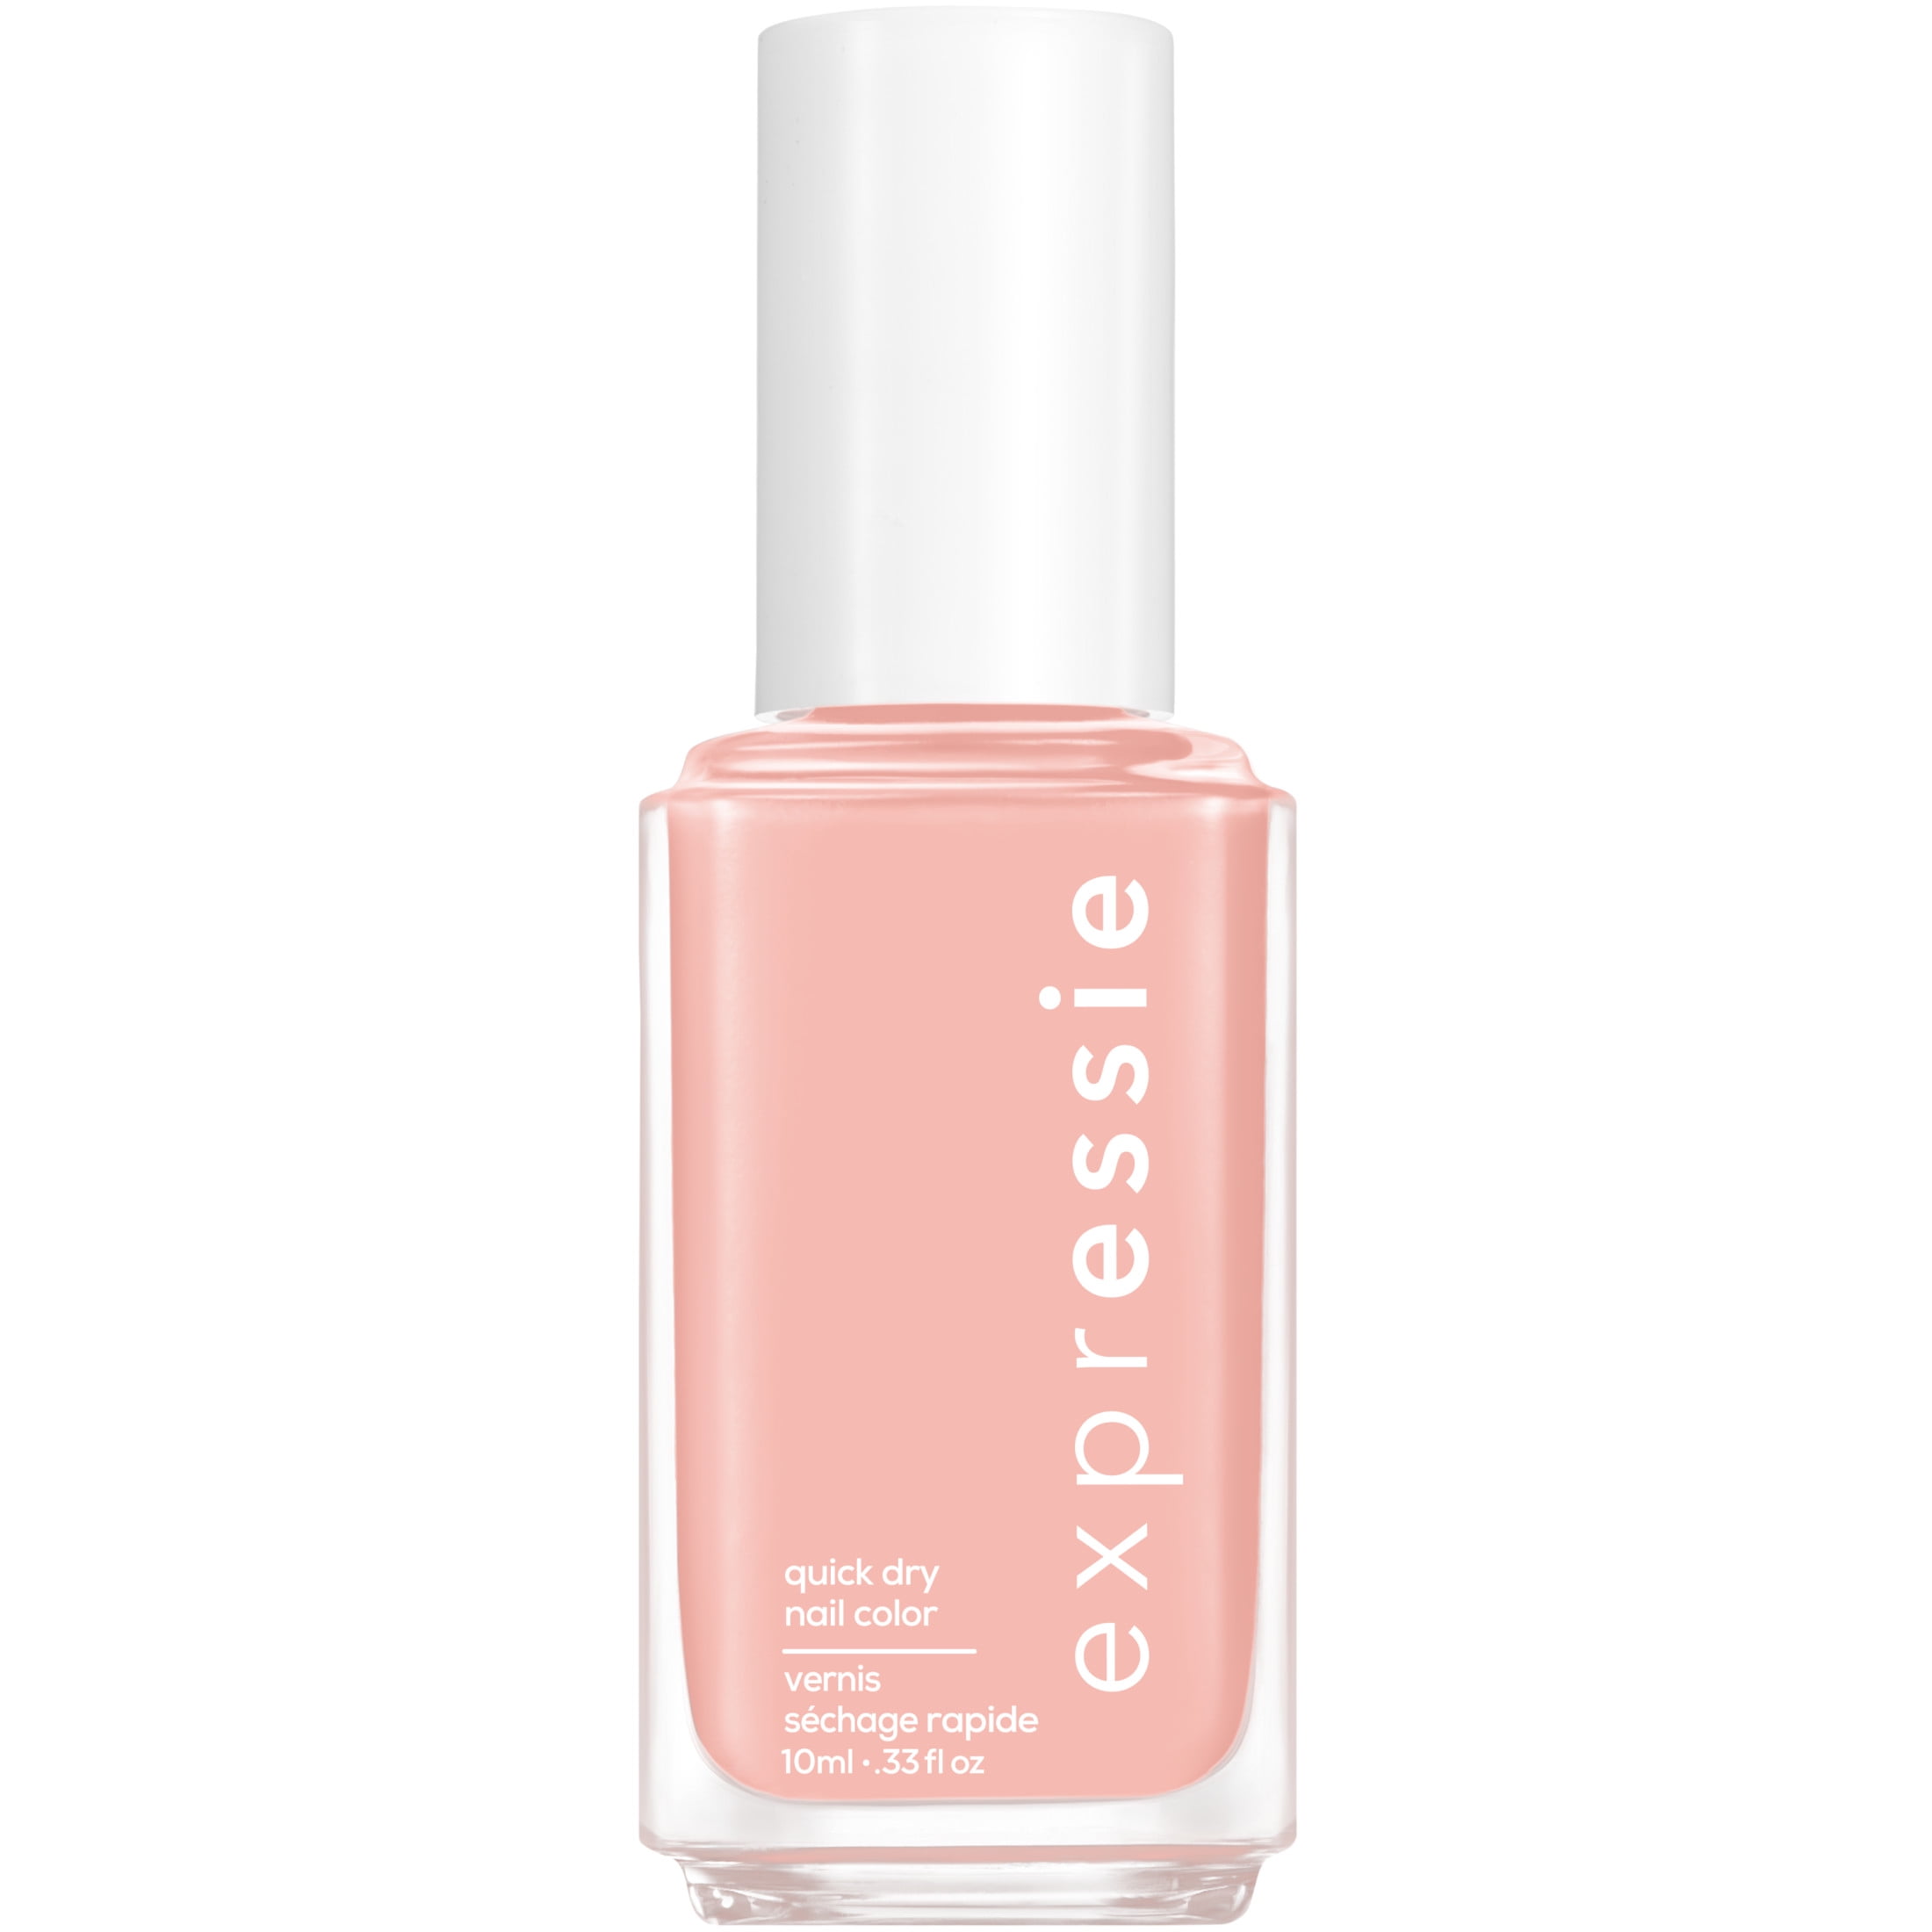 Soft Expressie Vegan Pink Nail Bottle Quick fl oz essie Dry 0.33 Beige, Polish,